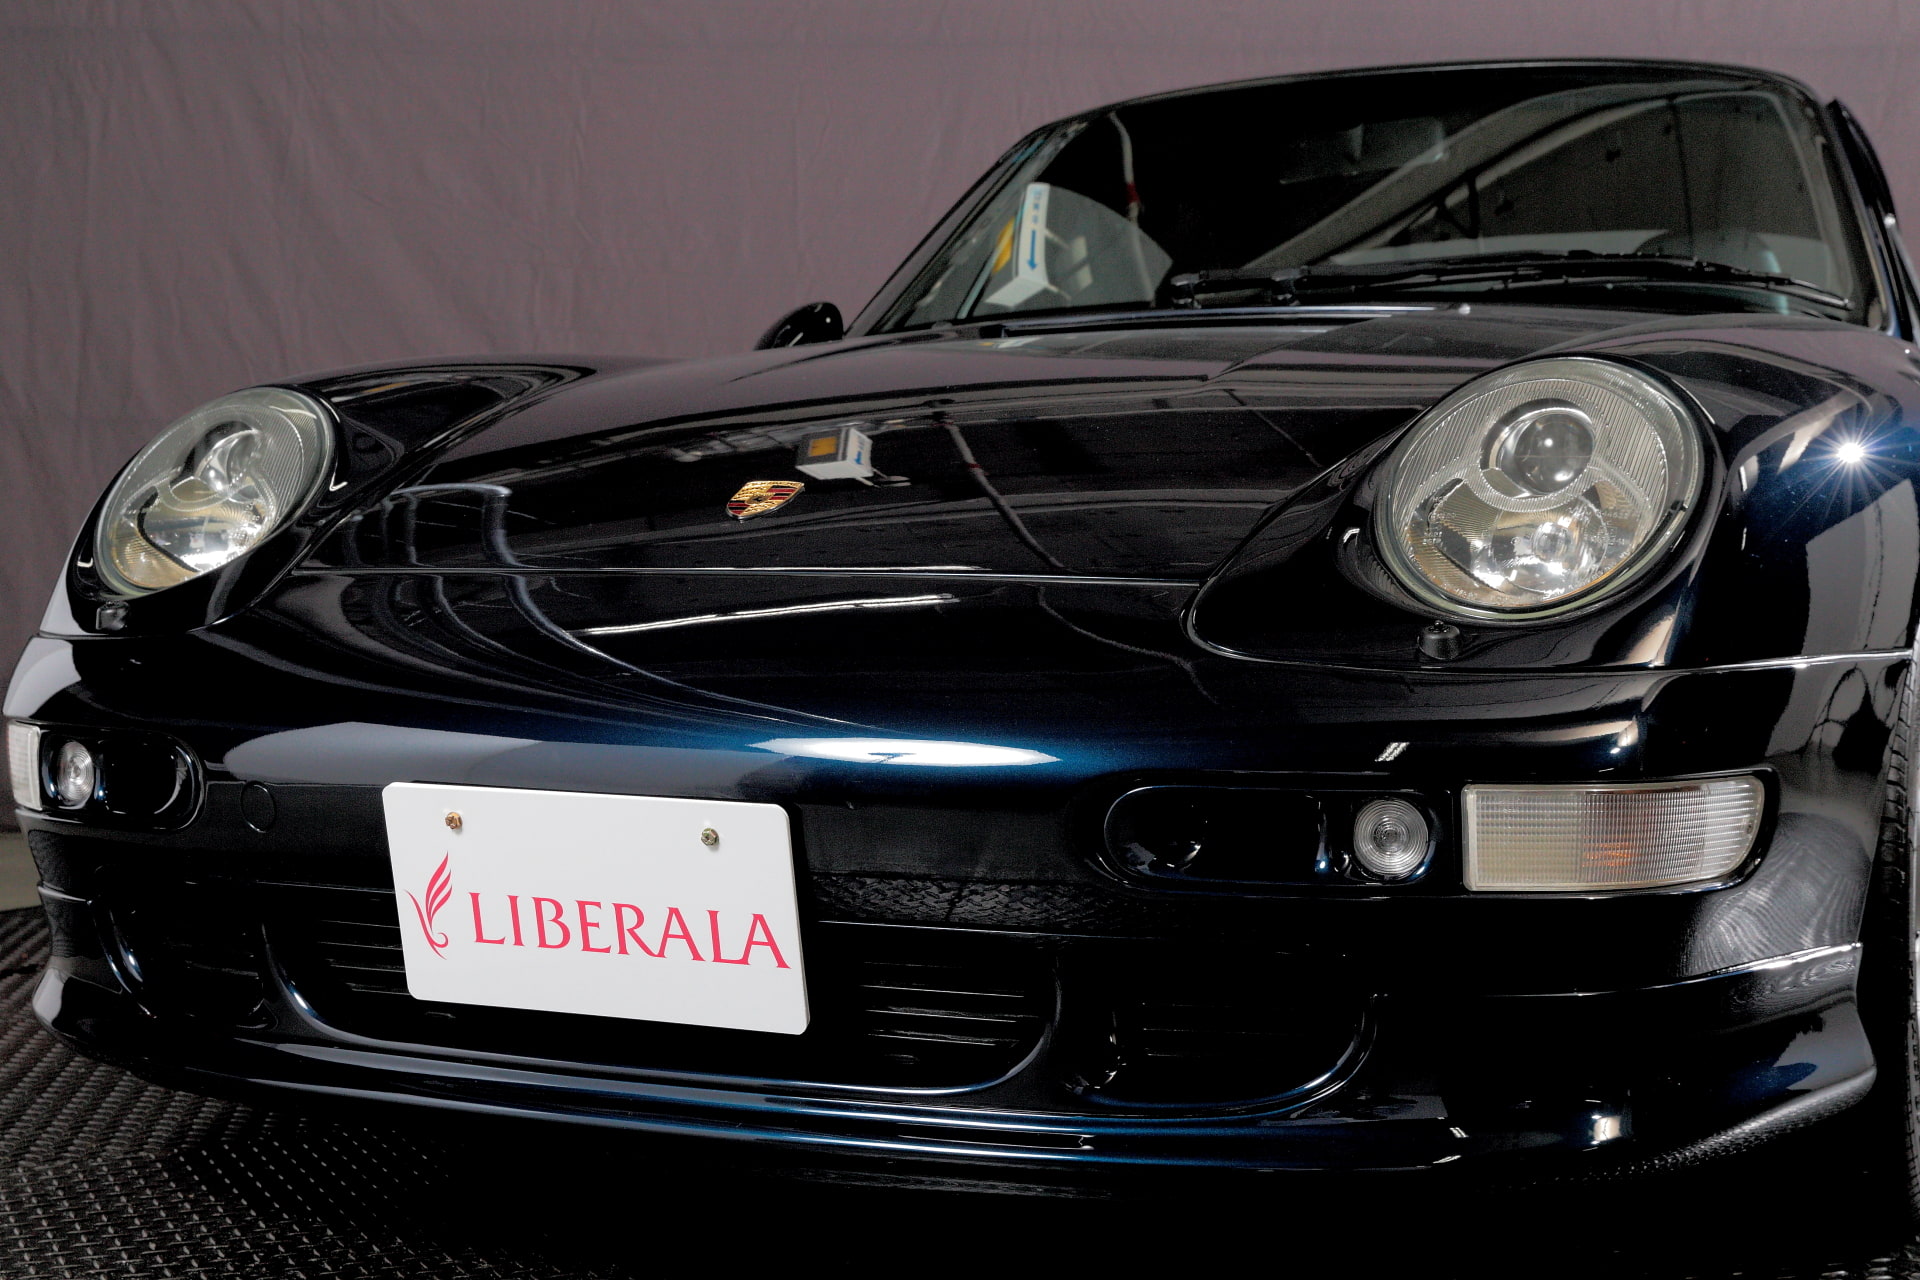 Porsche 911 Carrera4s 1997年 在庫詳細 6235 Liberalaで993 4sを検索